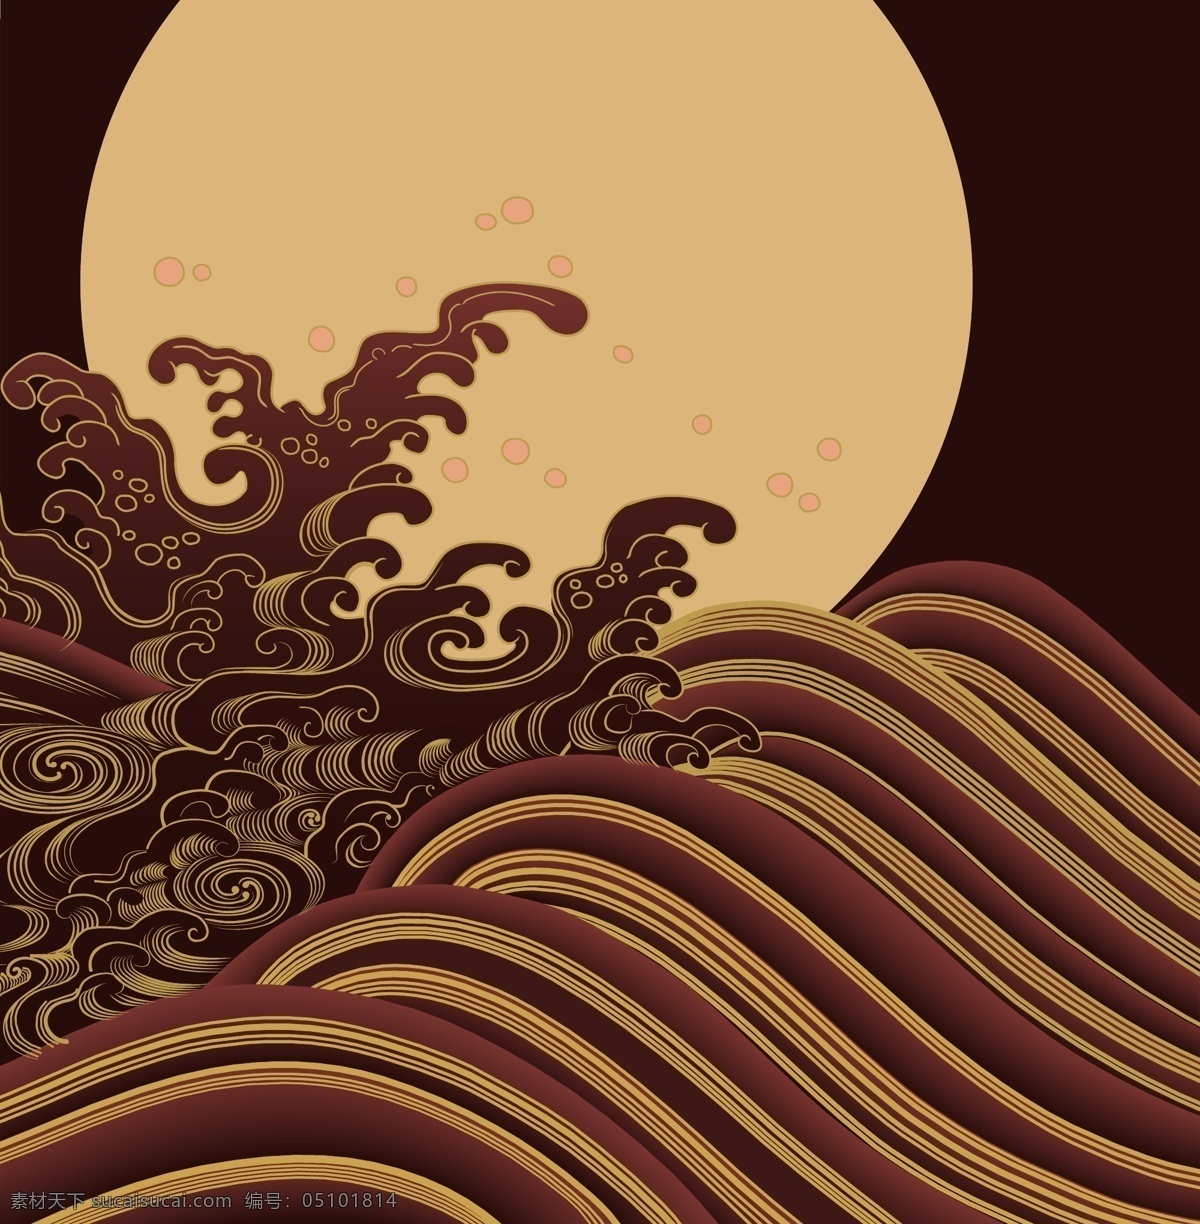 夜晚 海浪 底纹 日式底纹 日式花纹 月亮 中国风素材 日式 风格 花纹 大和风 矢量图 花纹花边